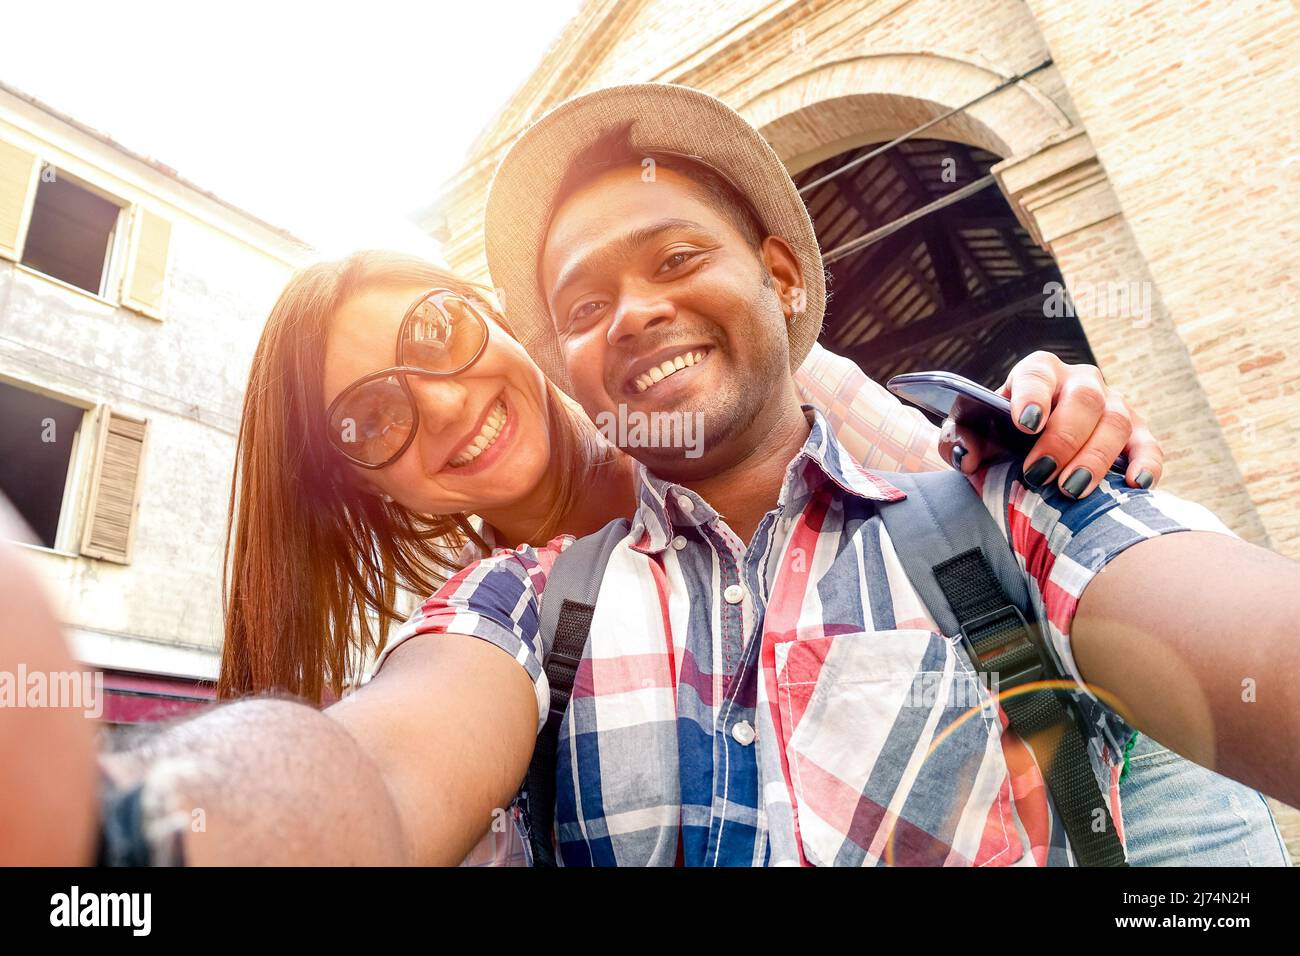 Coppia multirazziale che prende selfie al viaggio della città vecchia - concetto di divertimento con i viaggiatori di moda alternativi - ragazzo indiano con ragazza caucasica - caldo Foto Stock